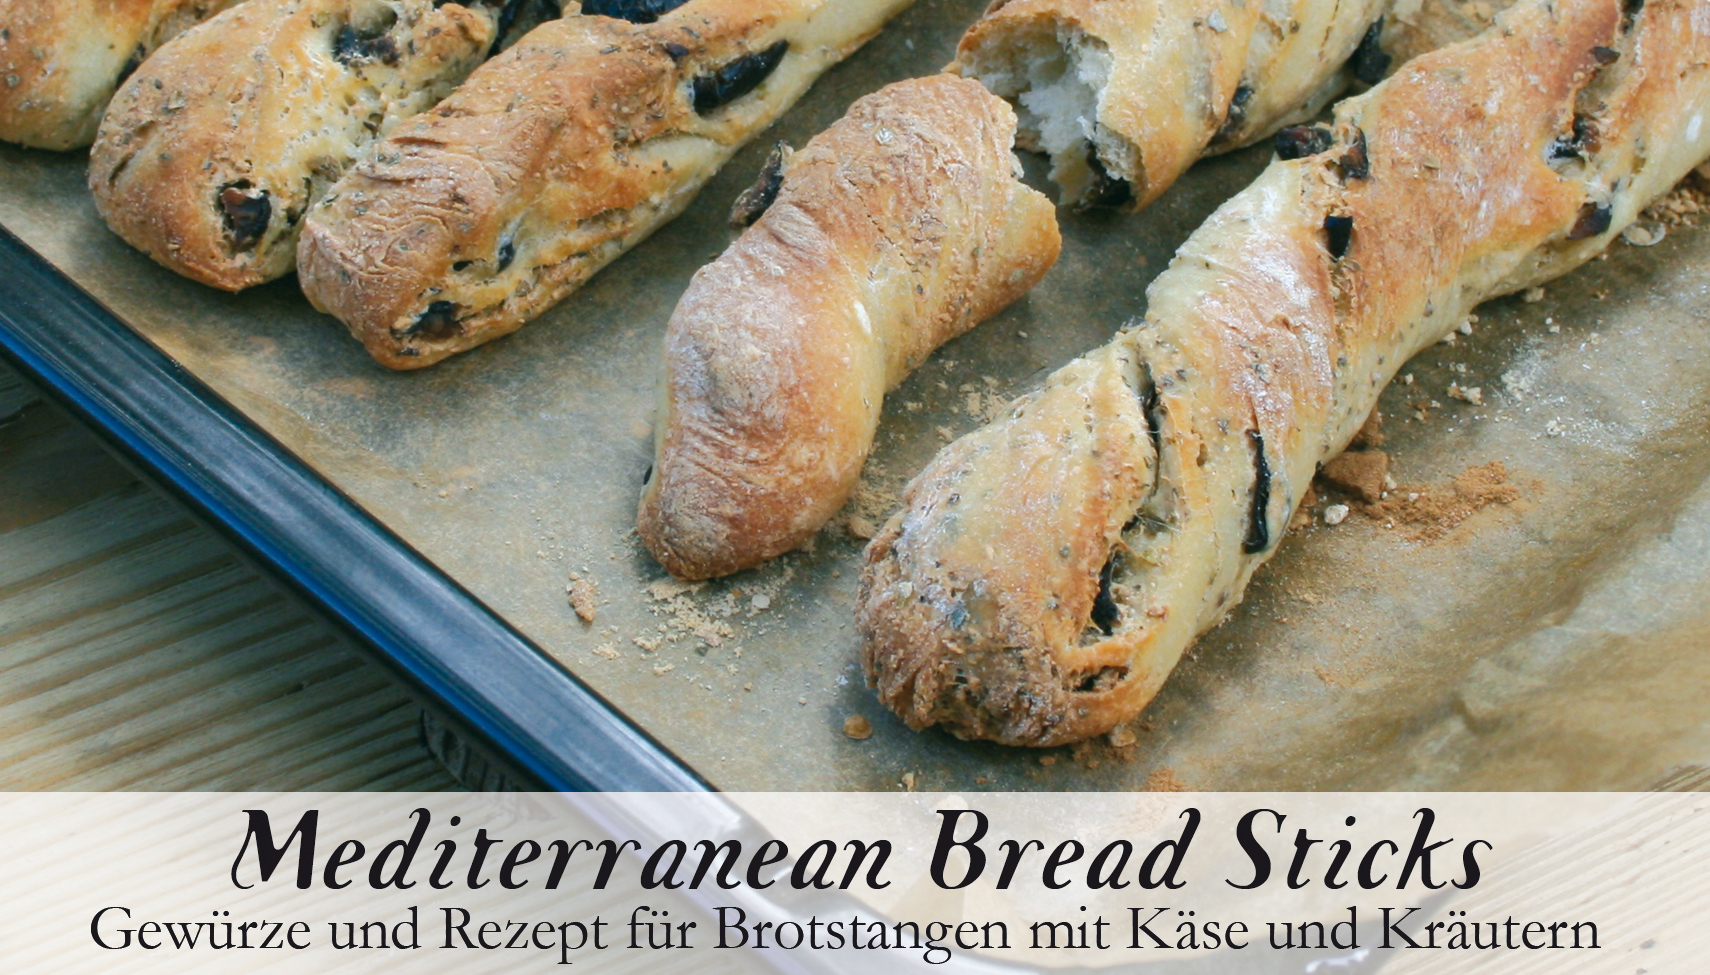 Mediterranean Bread Sticks-Gewürzkasten